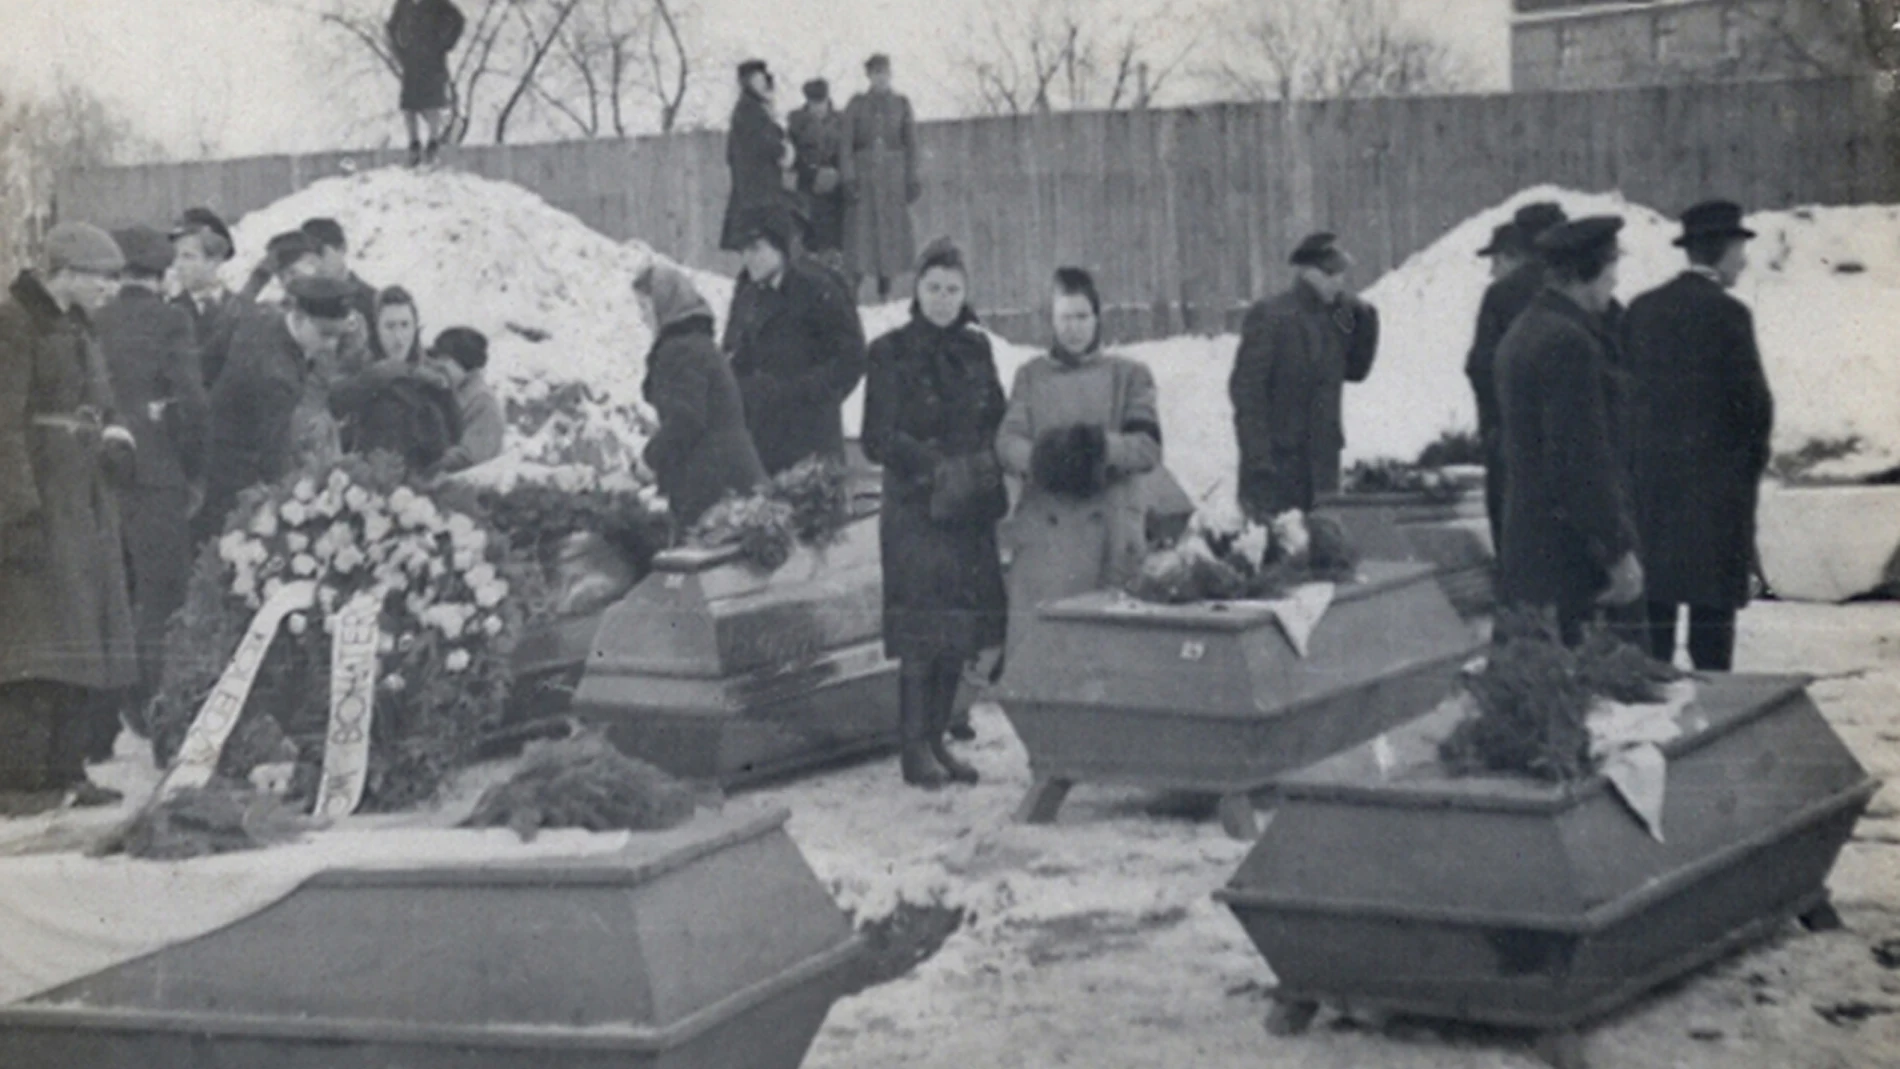 Las personas asesinadas son enterradas en uno de los cementerios de la ciudad